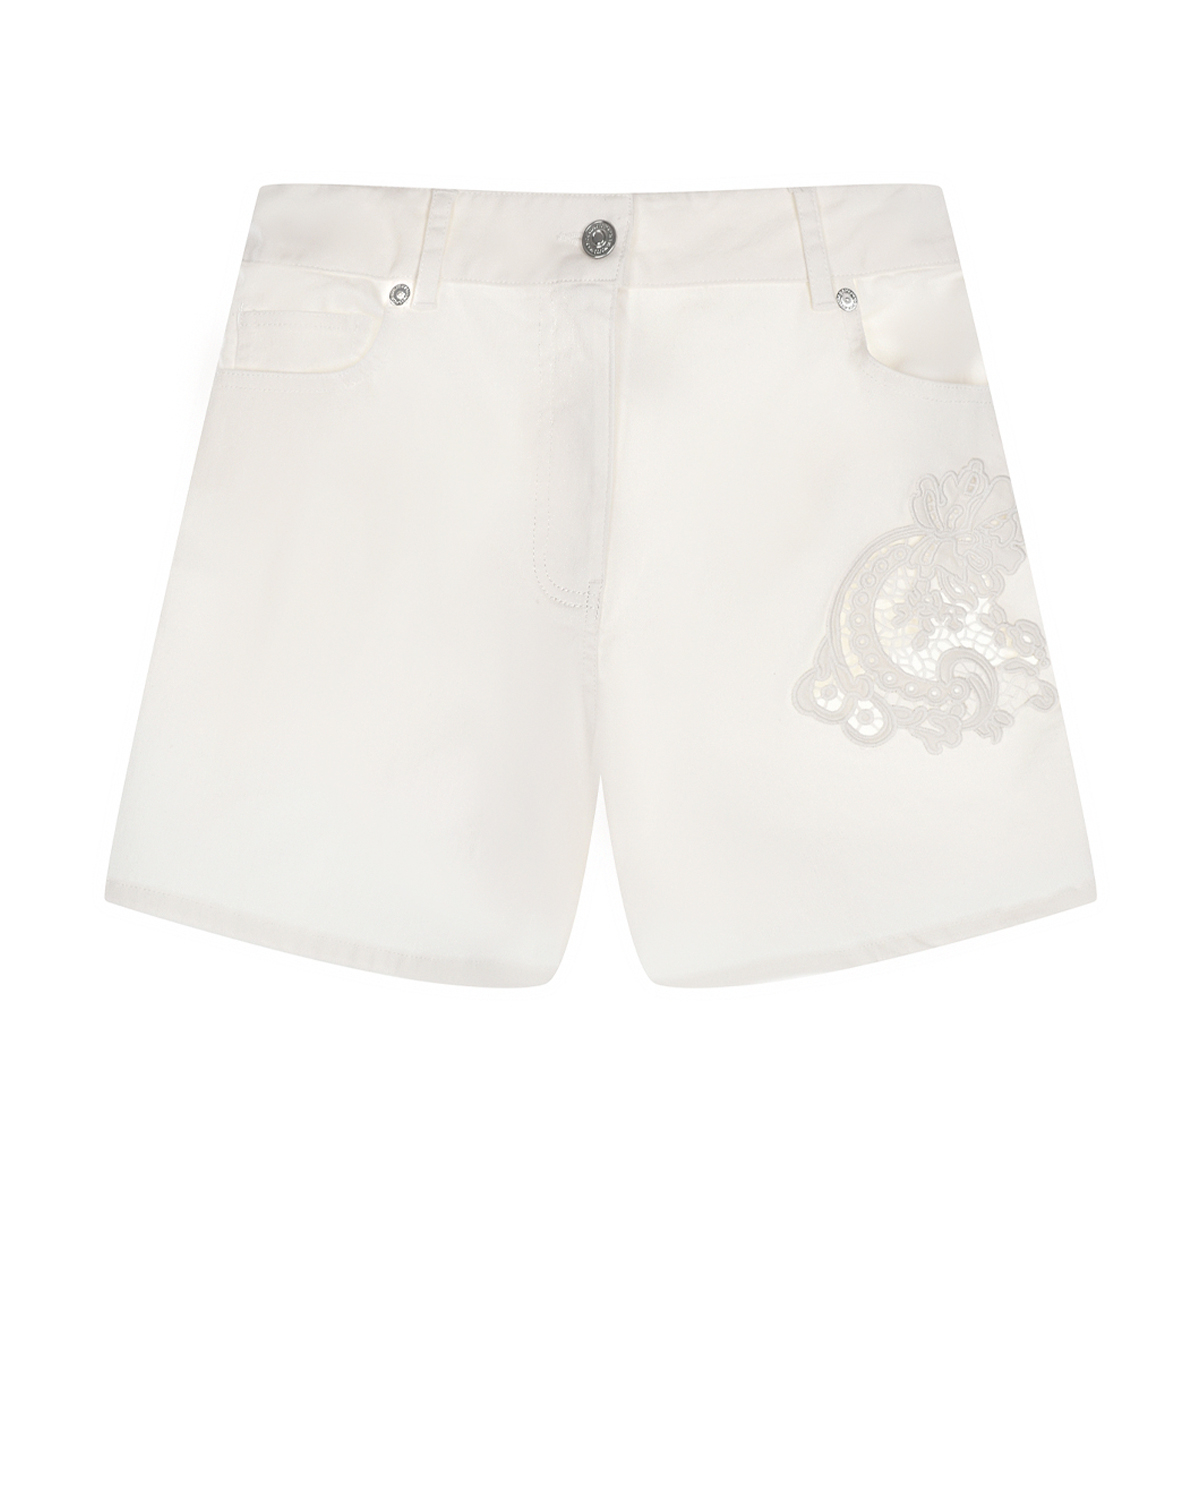 Белые джинсовые шорты с ажурной вышивкой Ermanno Scervino шорты джинсовые белые для девочки button blue 134